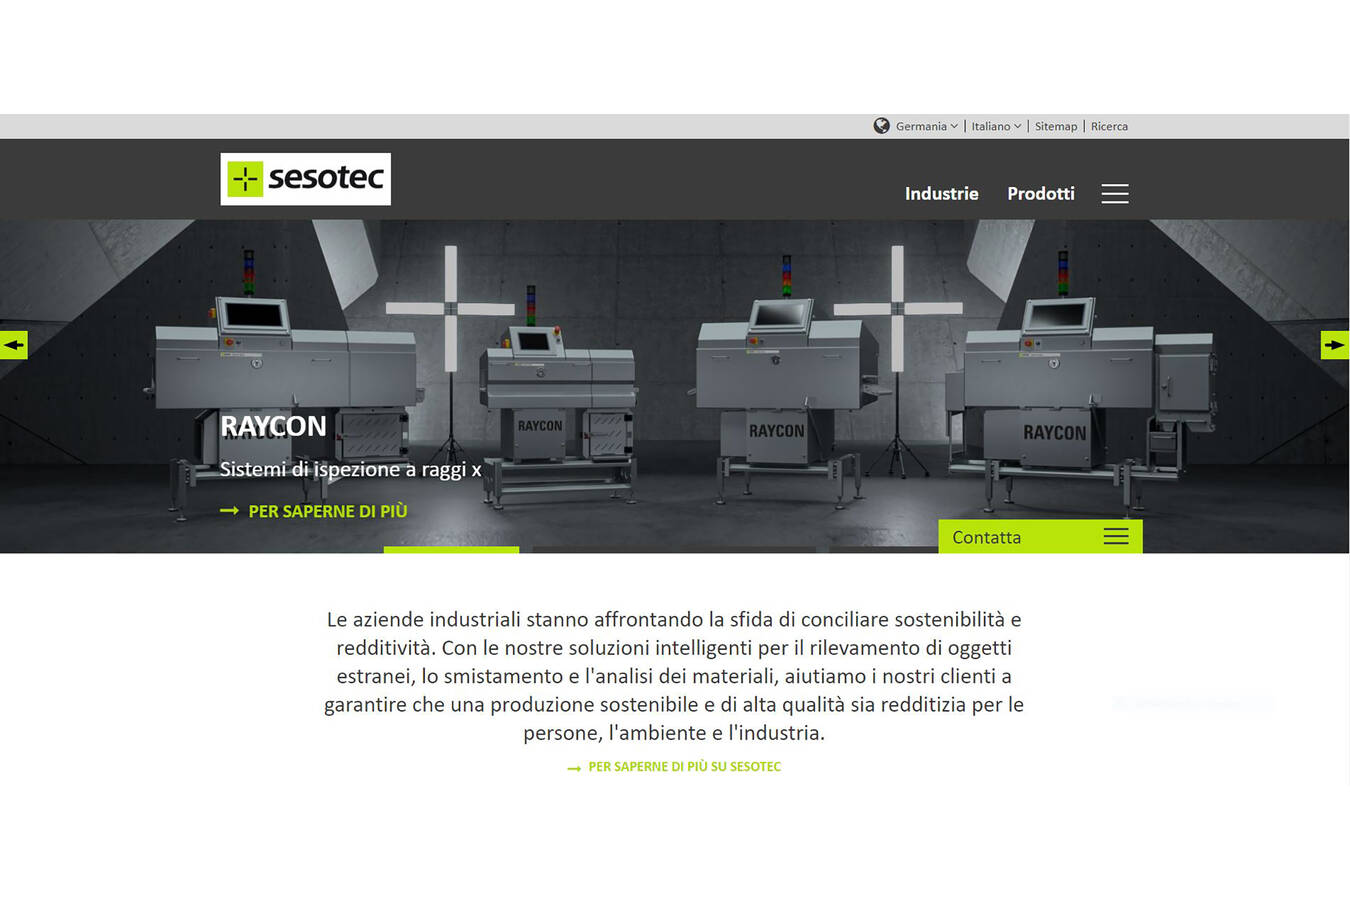 Fantastico: Die Website von Sesotec jetzt auch auf Italienisch 